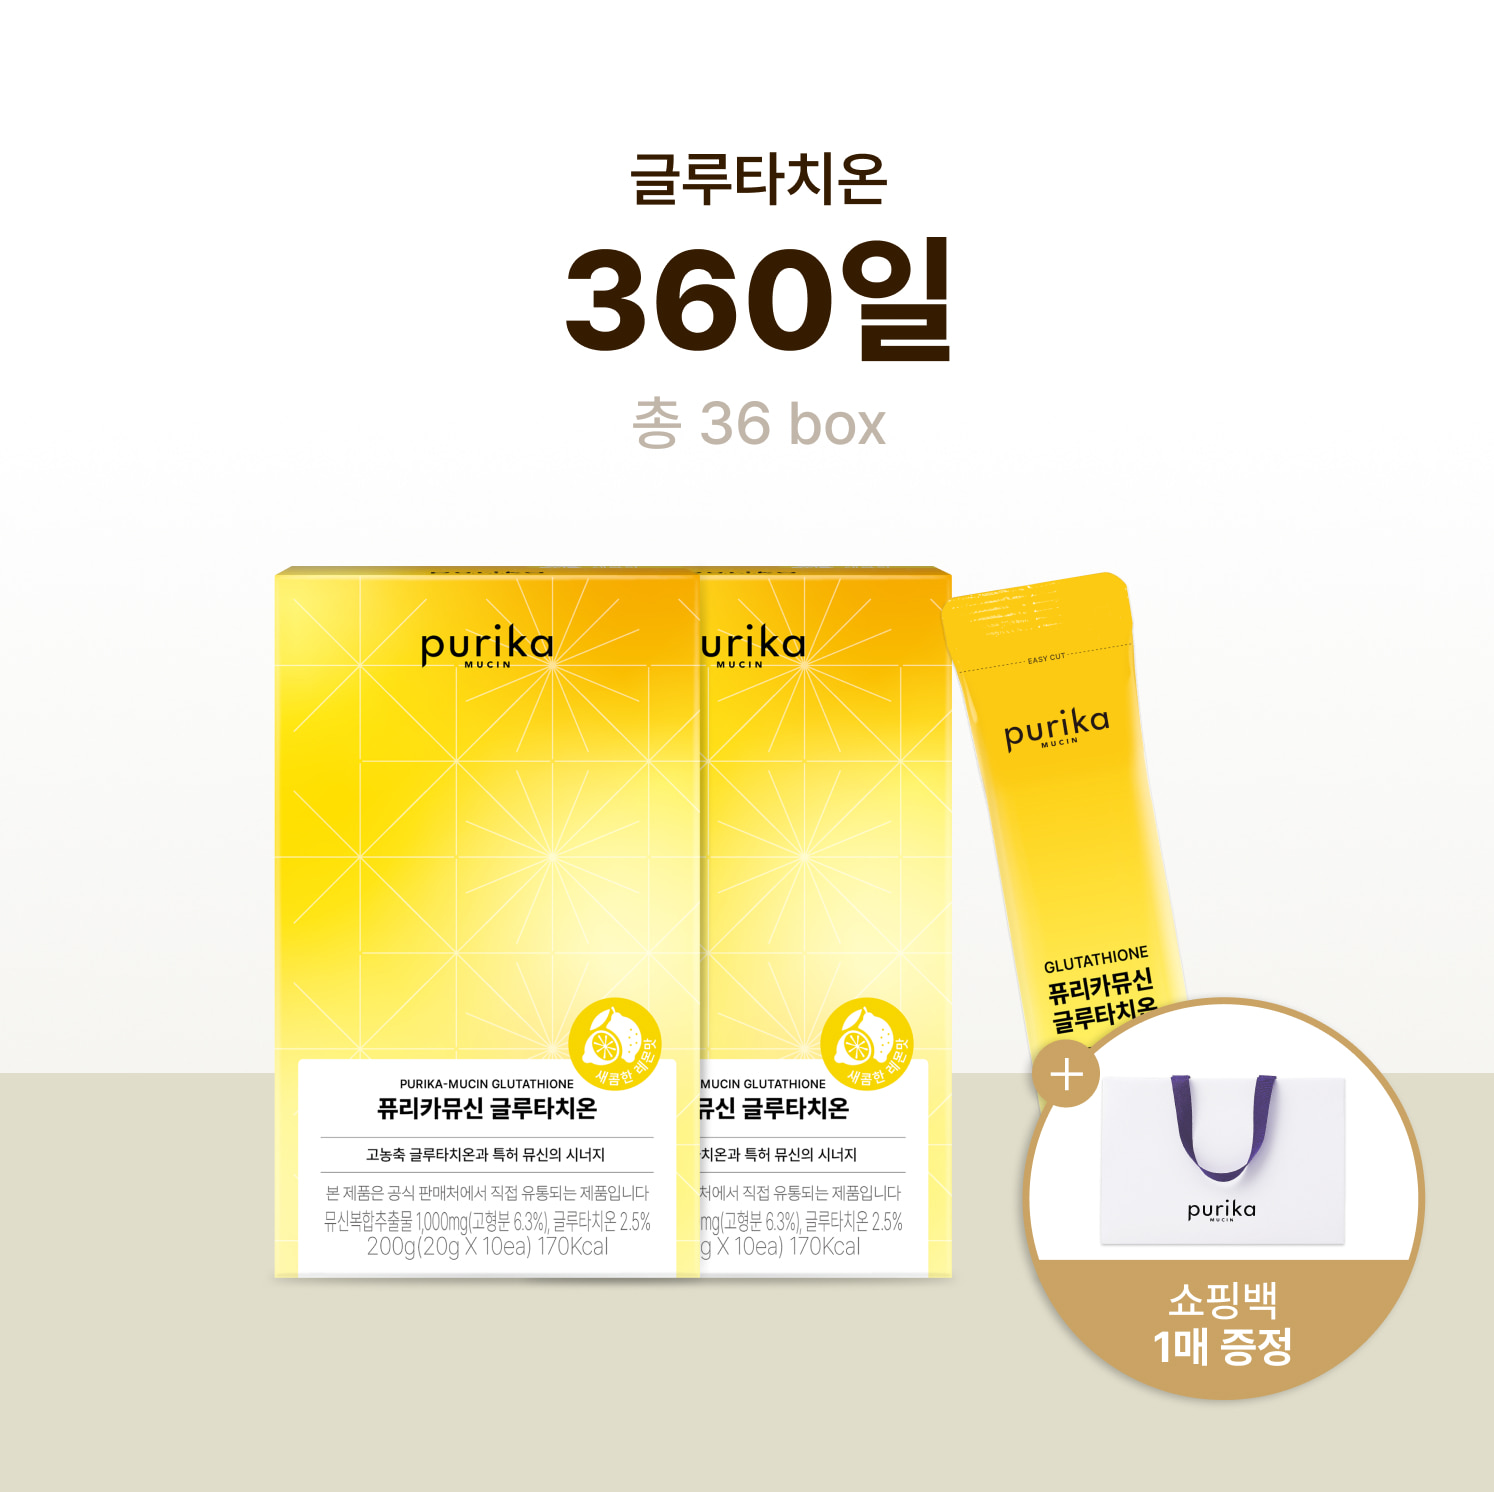 뮤신 글루타치온 (36box, 360일) + 쇼핑백 증정(1매)